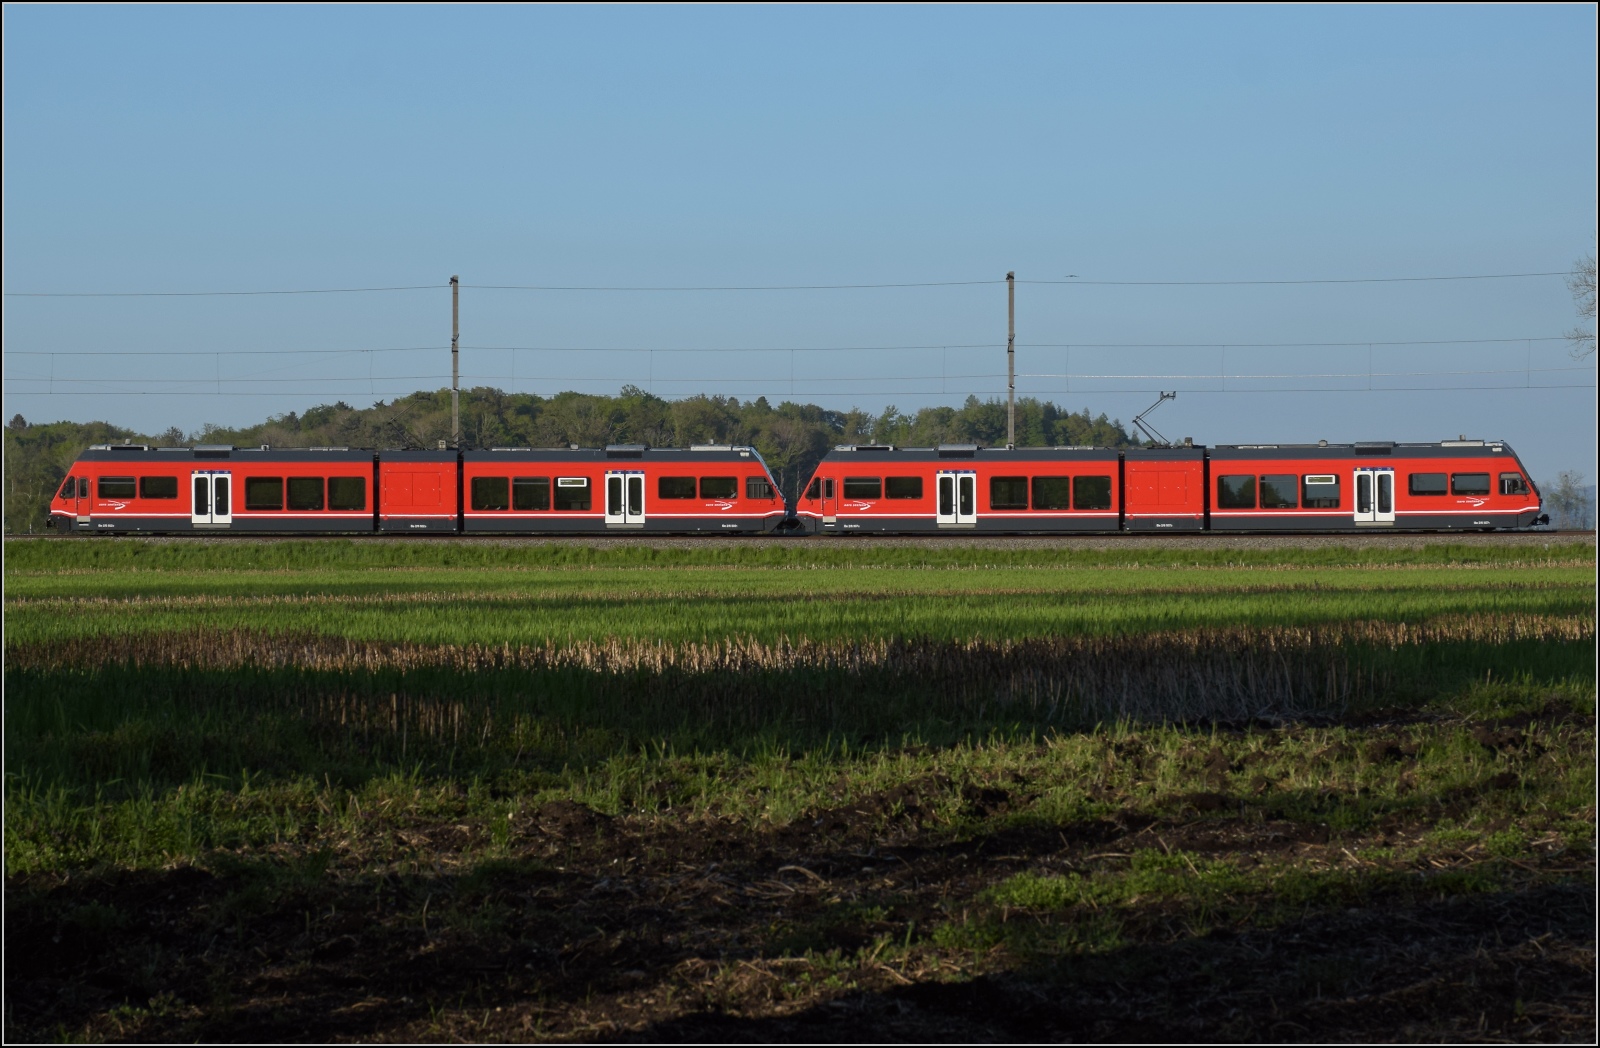 Auf der Biel-Tuffelen-Ins Bahn.

GTW Be 2/6 502 und GTW Be 2/6 507 der ASm im Lscherzer Moos. April 2022.